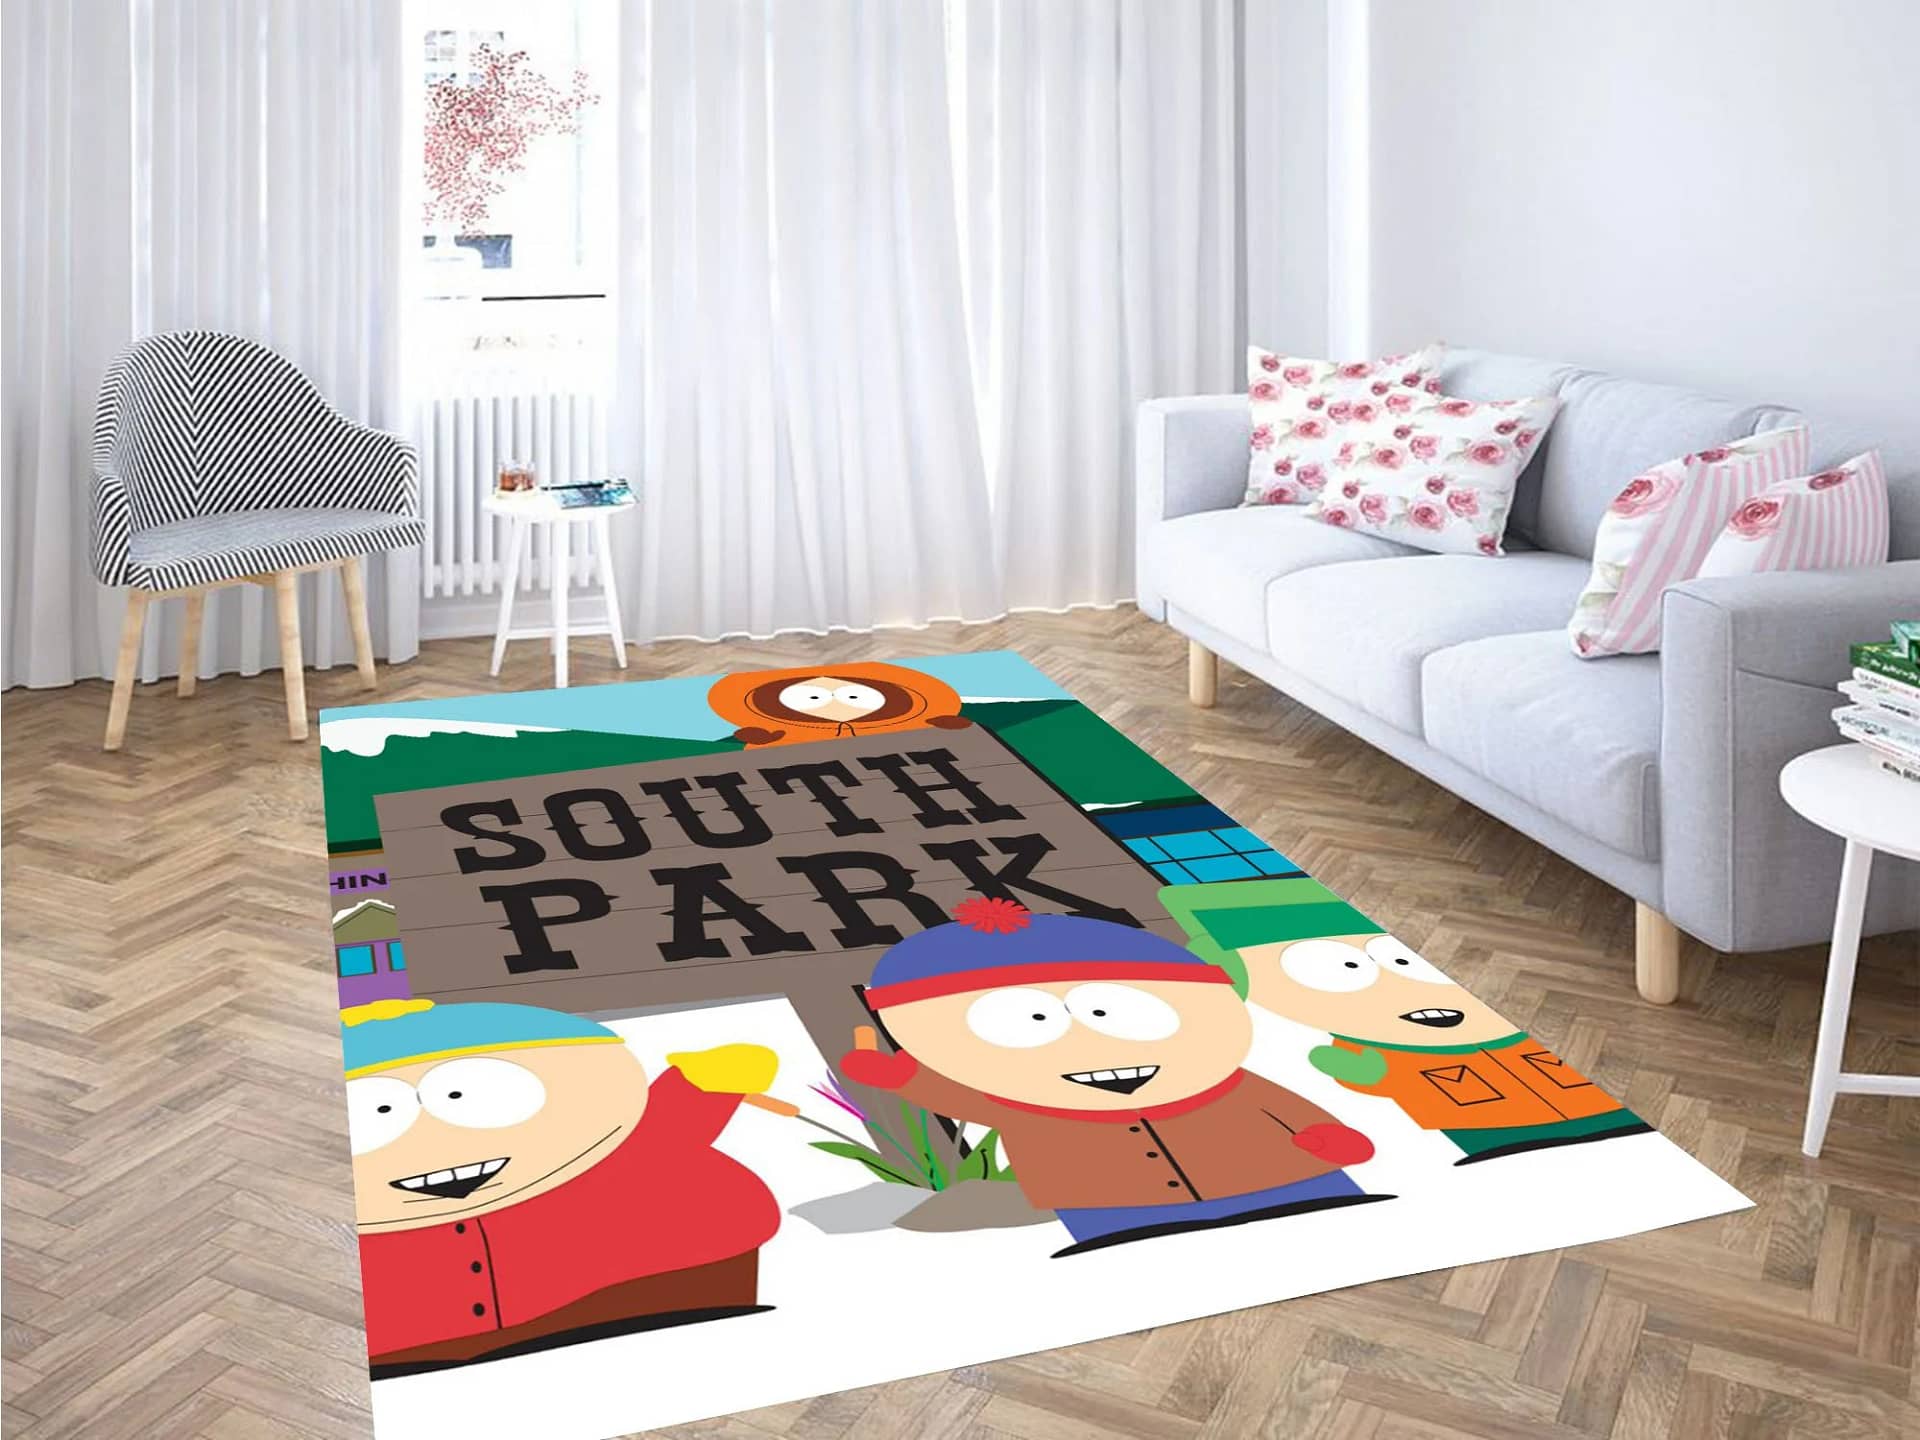 South Park Cartoon Network Carpet Rug